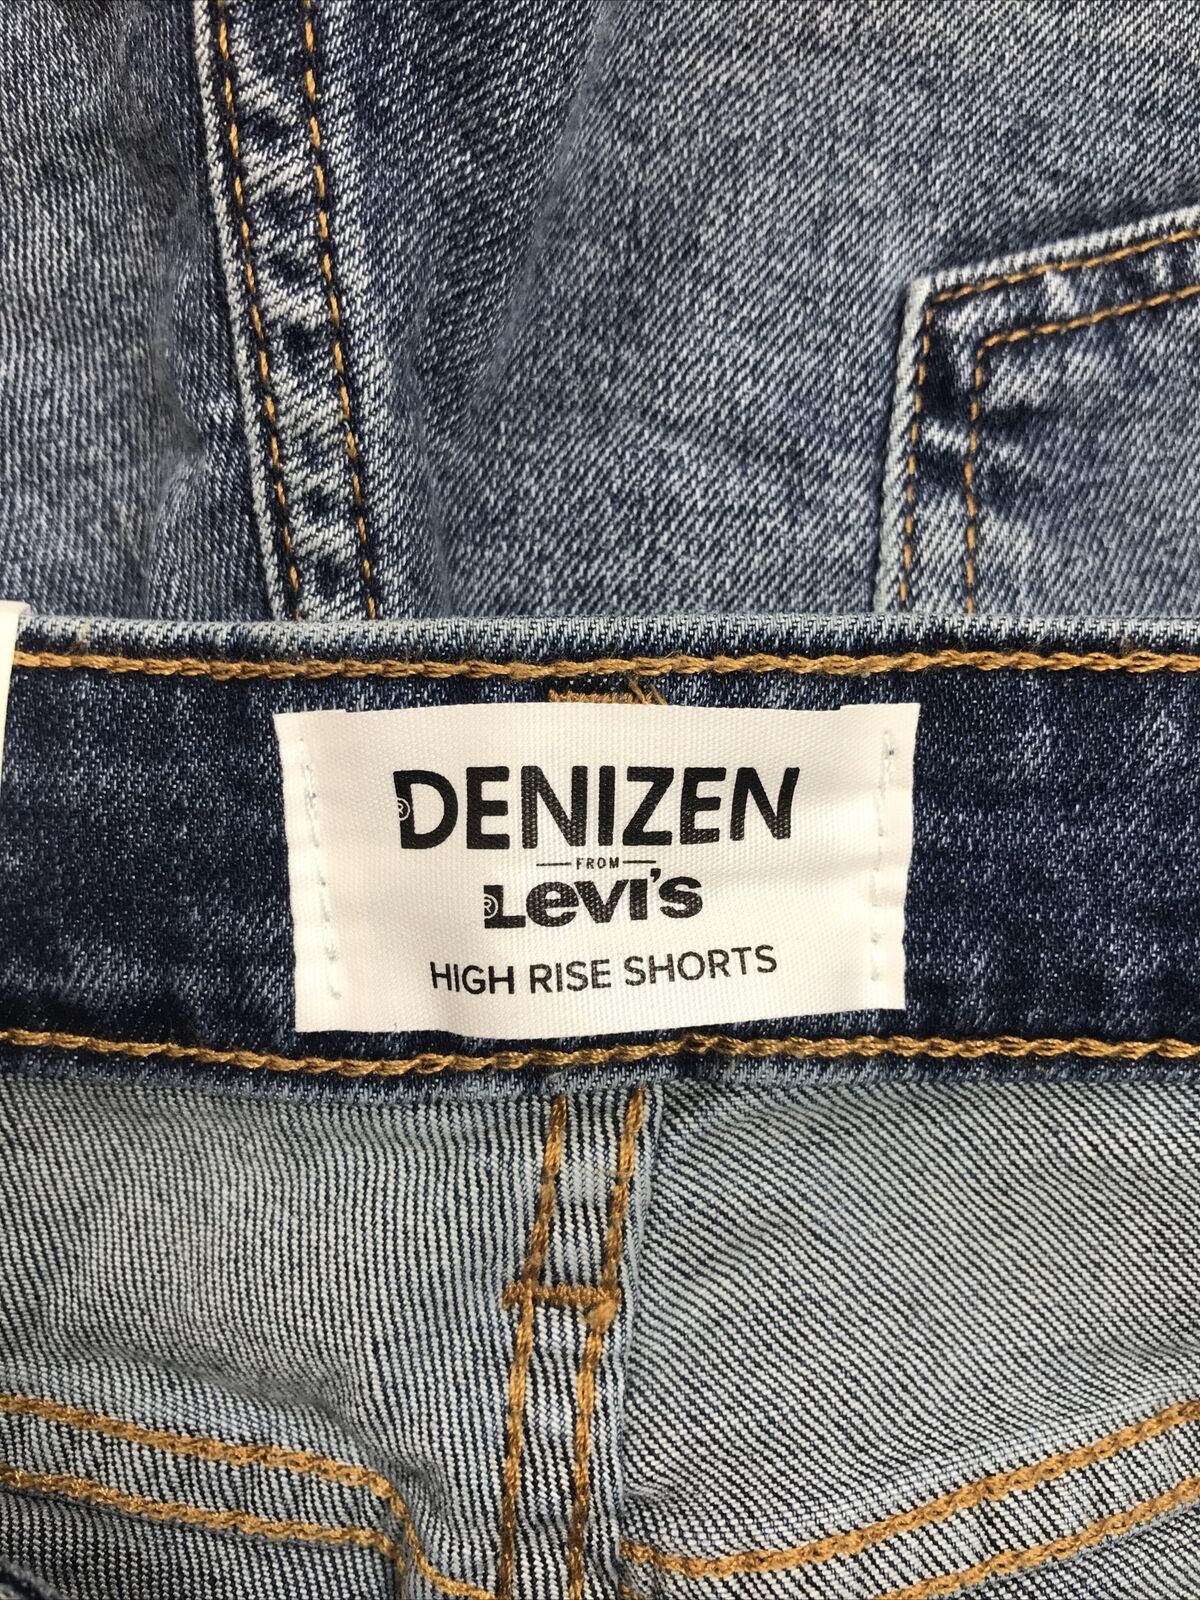 NEW Denizen by Levis Women's Medium Wash High Rise Denim Shorts - 6